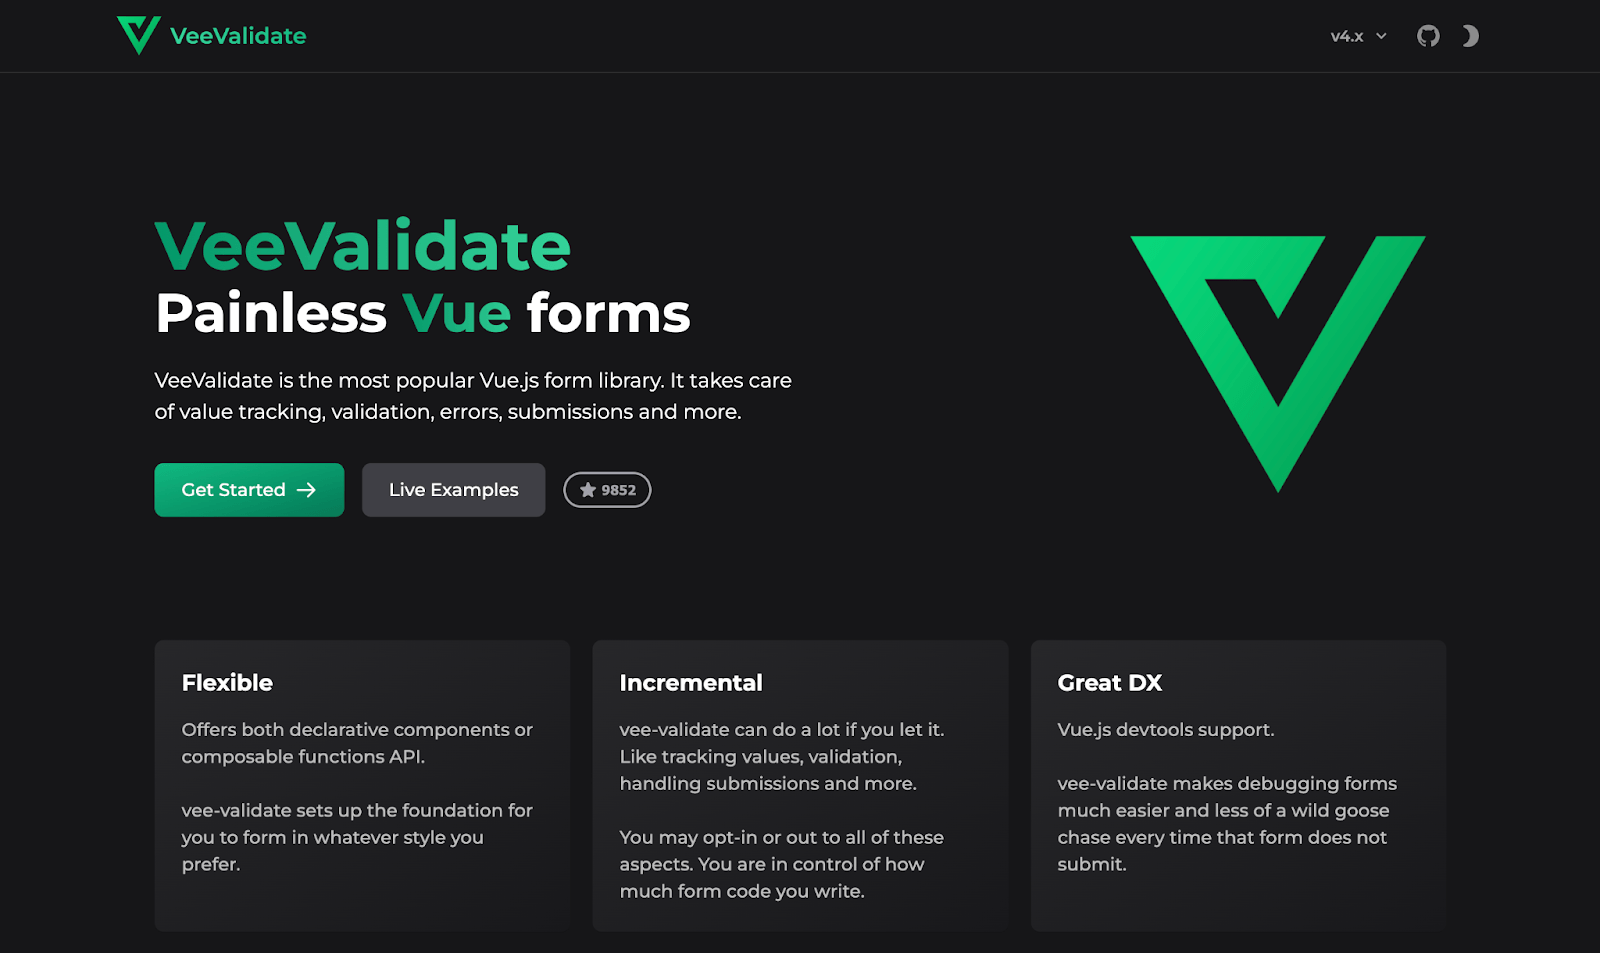 The homepage of VeeValidate